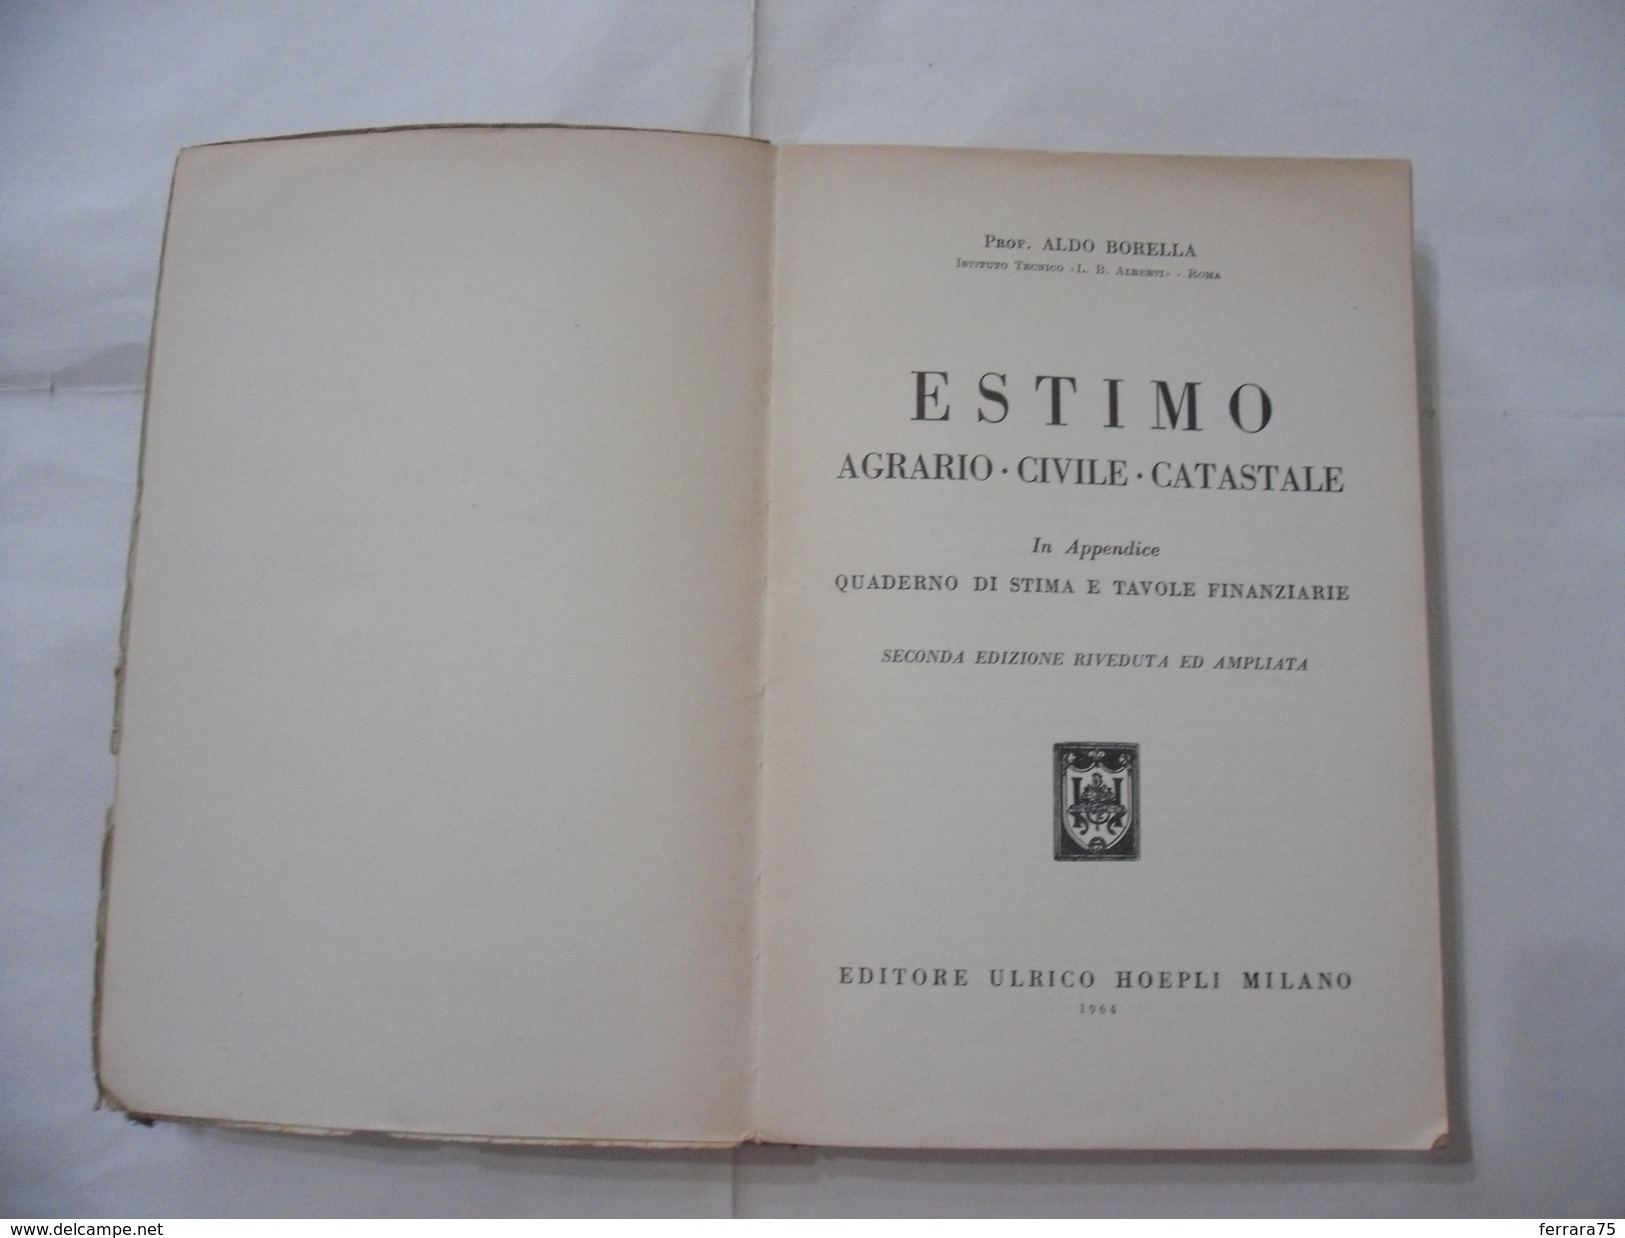 LIBRO PROF.ALDO BORELLA ESTIMO AGRARIO-CIVILE-CATASTALE ULRICO HOEPLI 1964. - Medicina, Biologia, Chimica